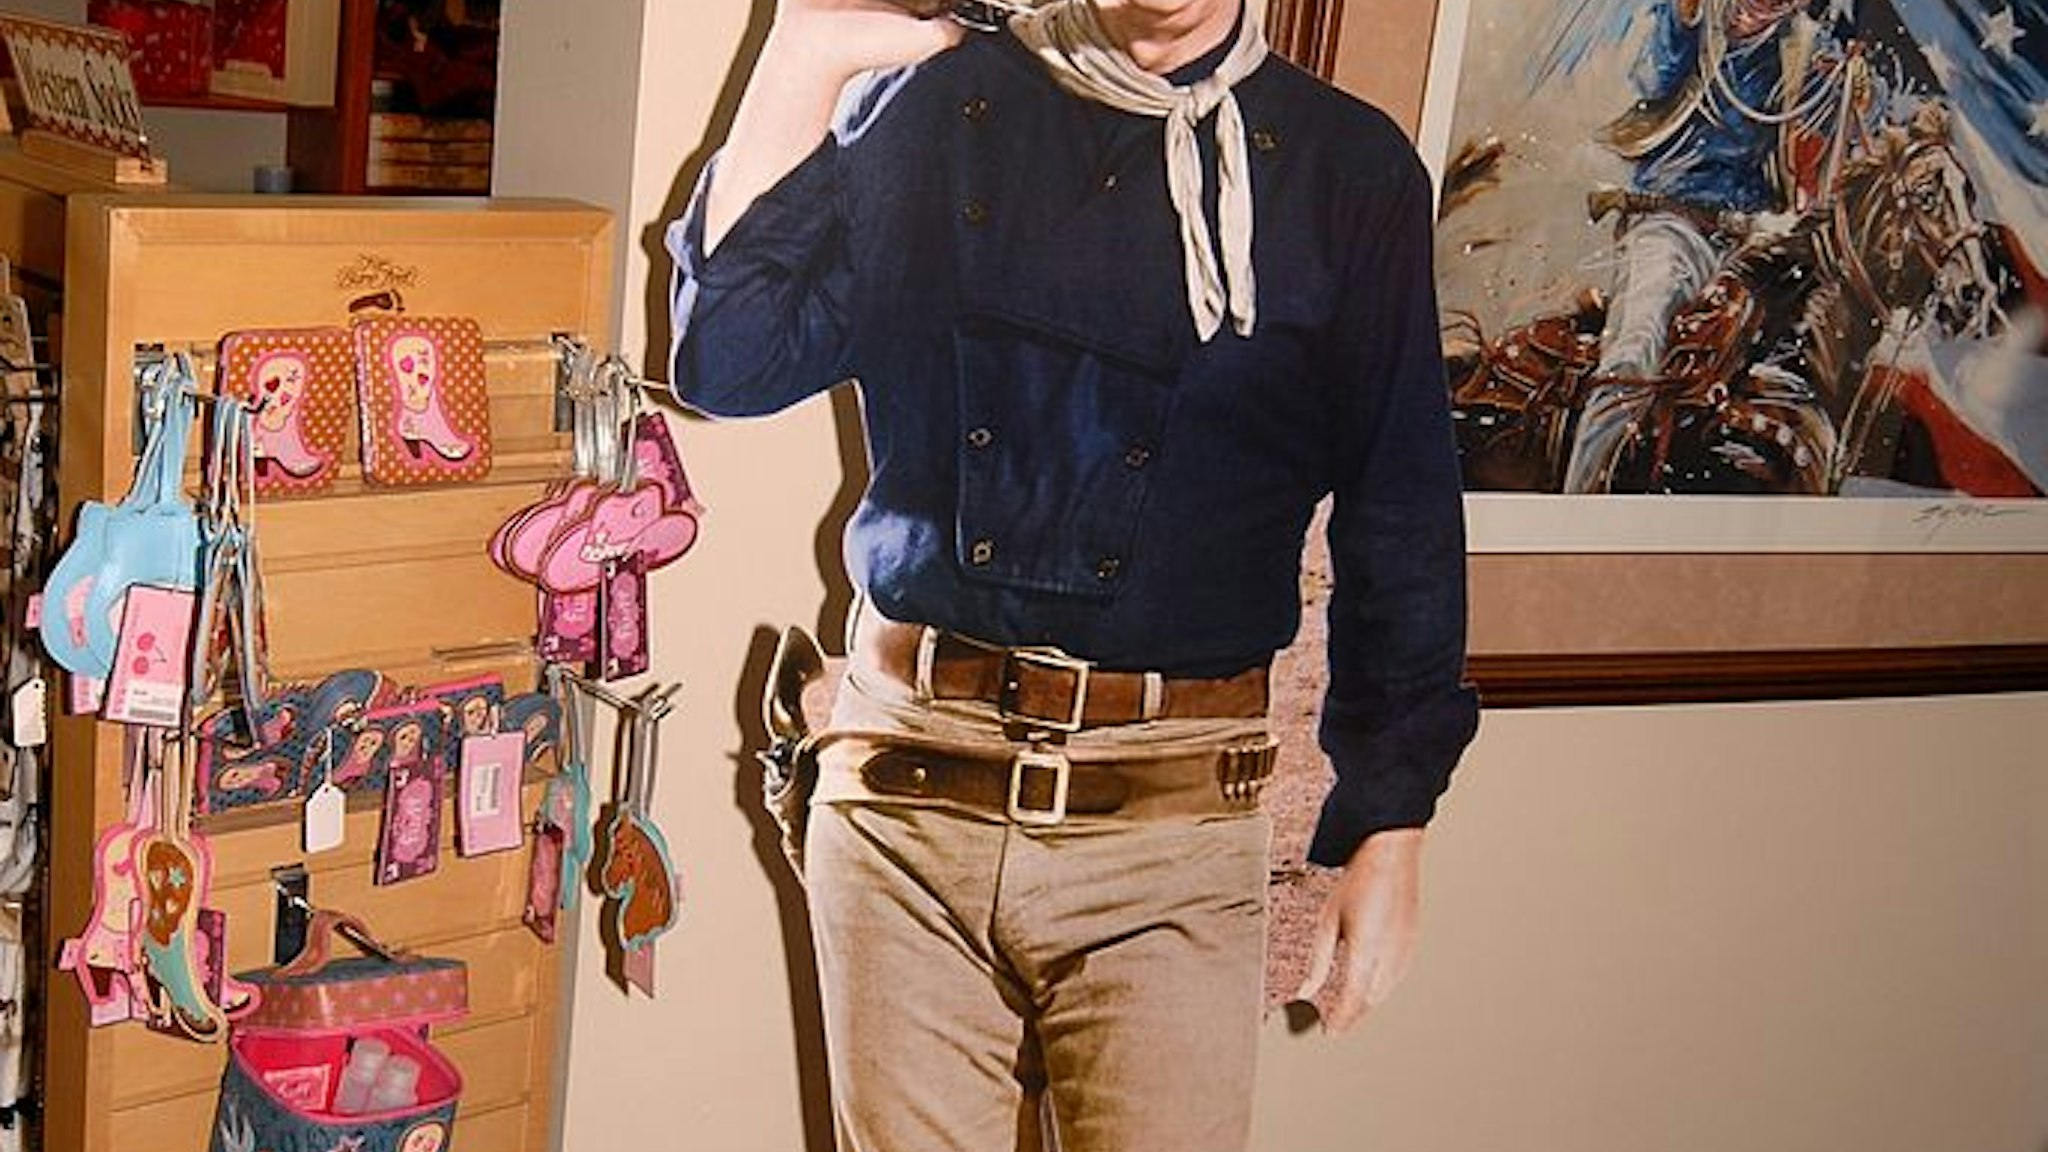 Papp-Aufsteller und Gemälde von Western-Schauspieler John Wayne, "National Cowboy and Western Heritage Museum", Oklahoma City, Staat Oklahoma, Great Plains, USA, Nordamerika, Amerika, Reise, BB, DIG; P.-Nr.: 860/2009, 29.09.2009